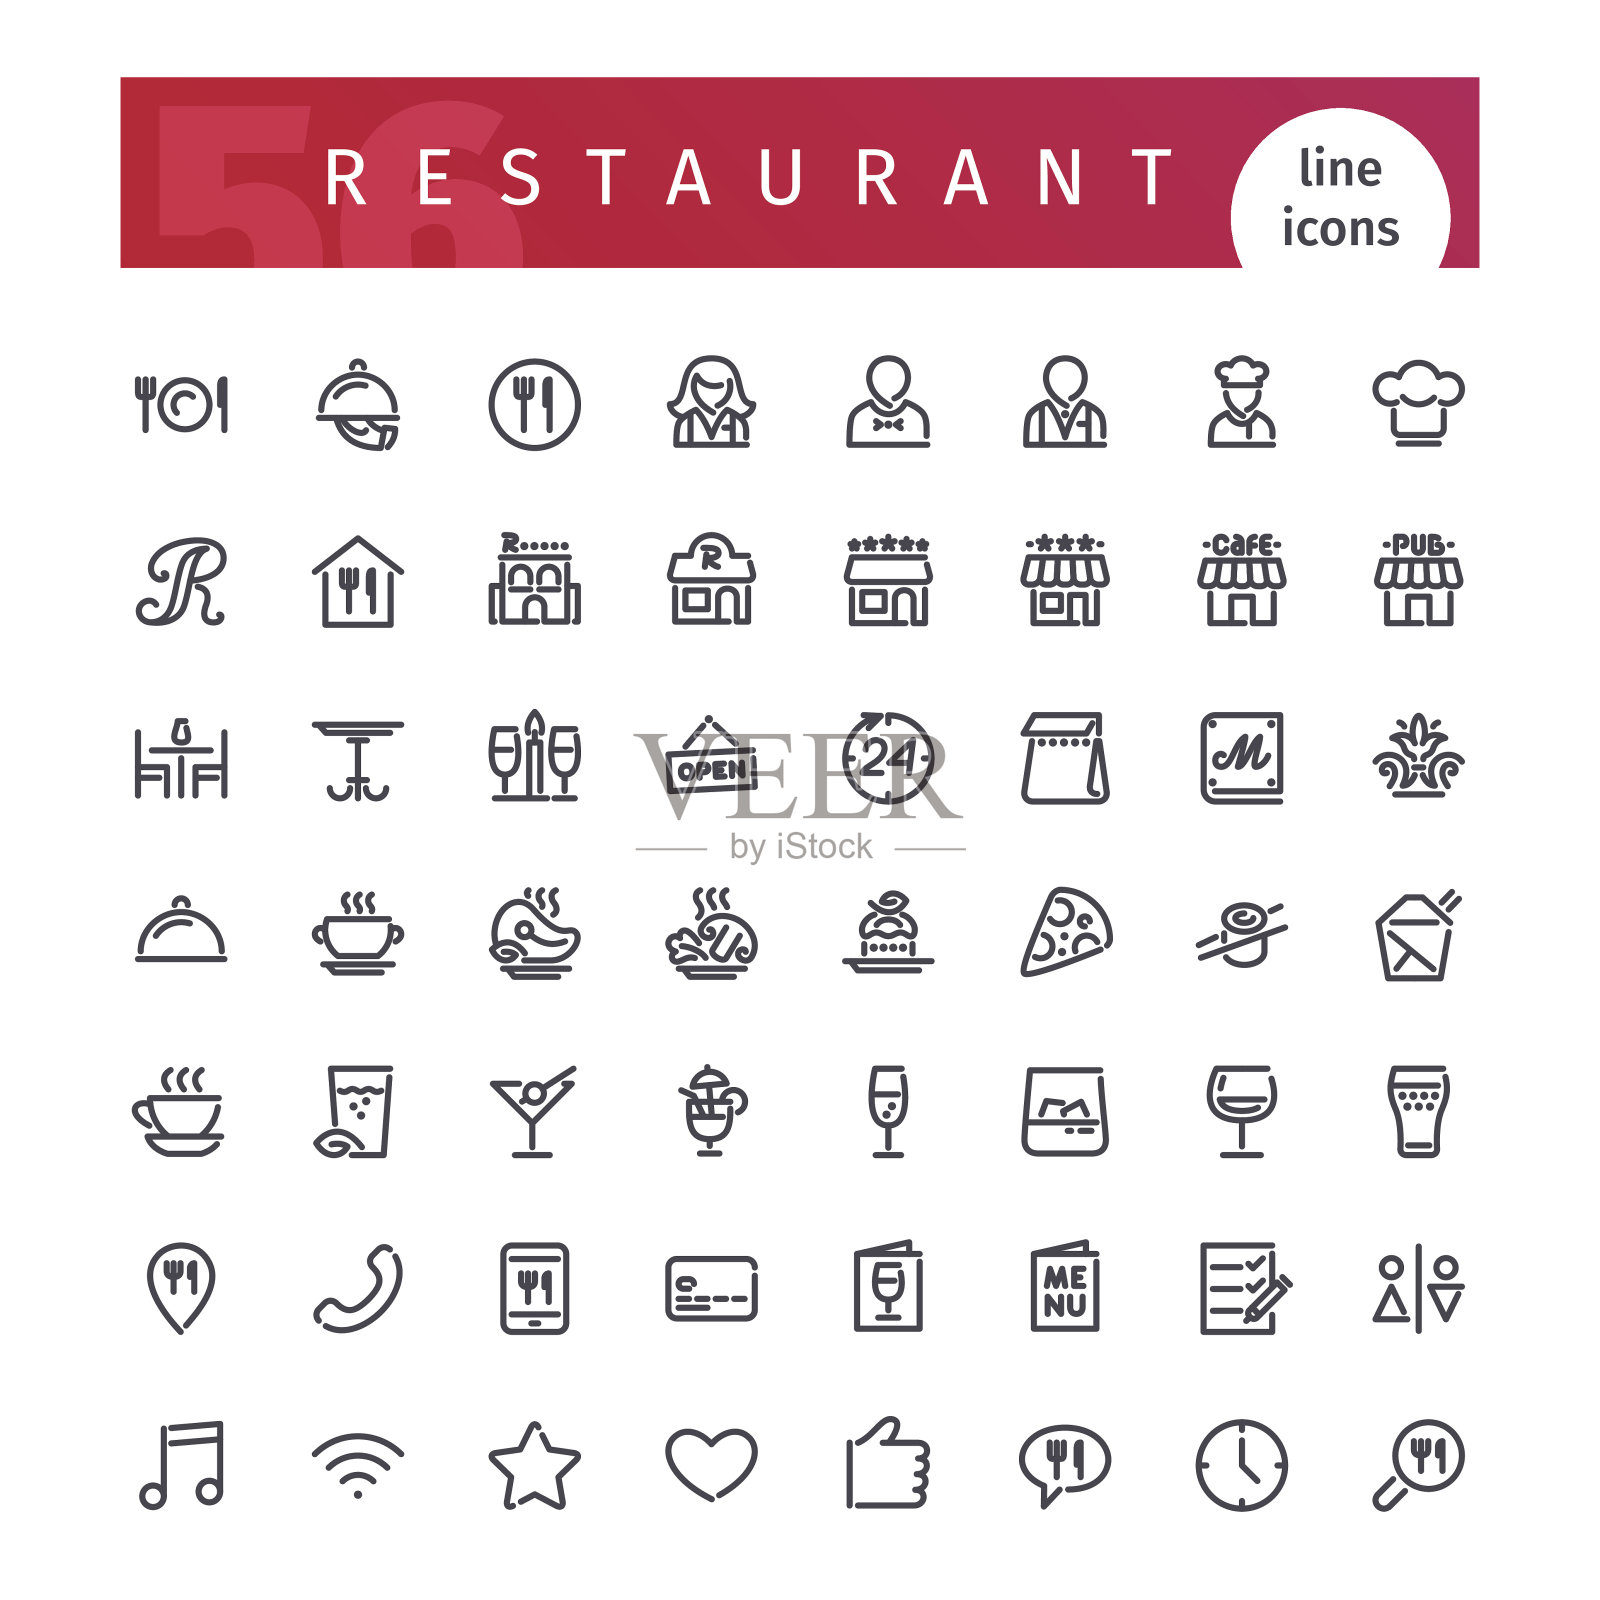 餐厅系列图标套装插画图片素材